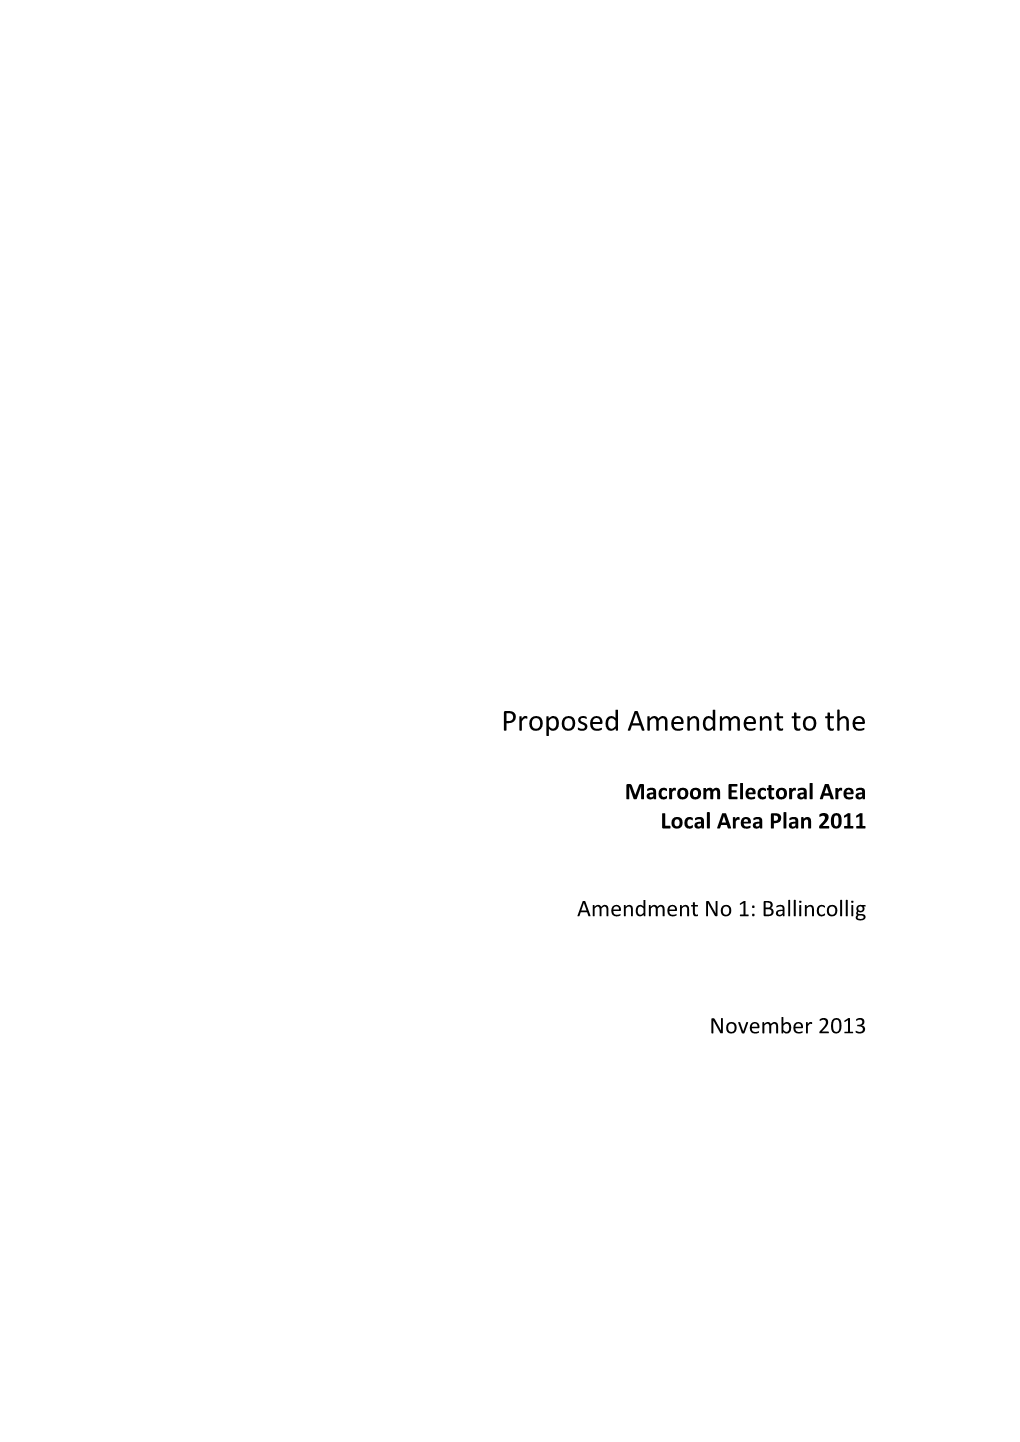 Macroom LAP Amendment No. 1